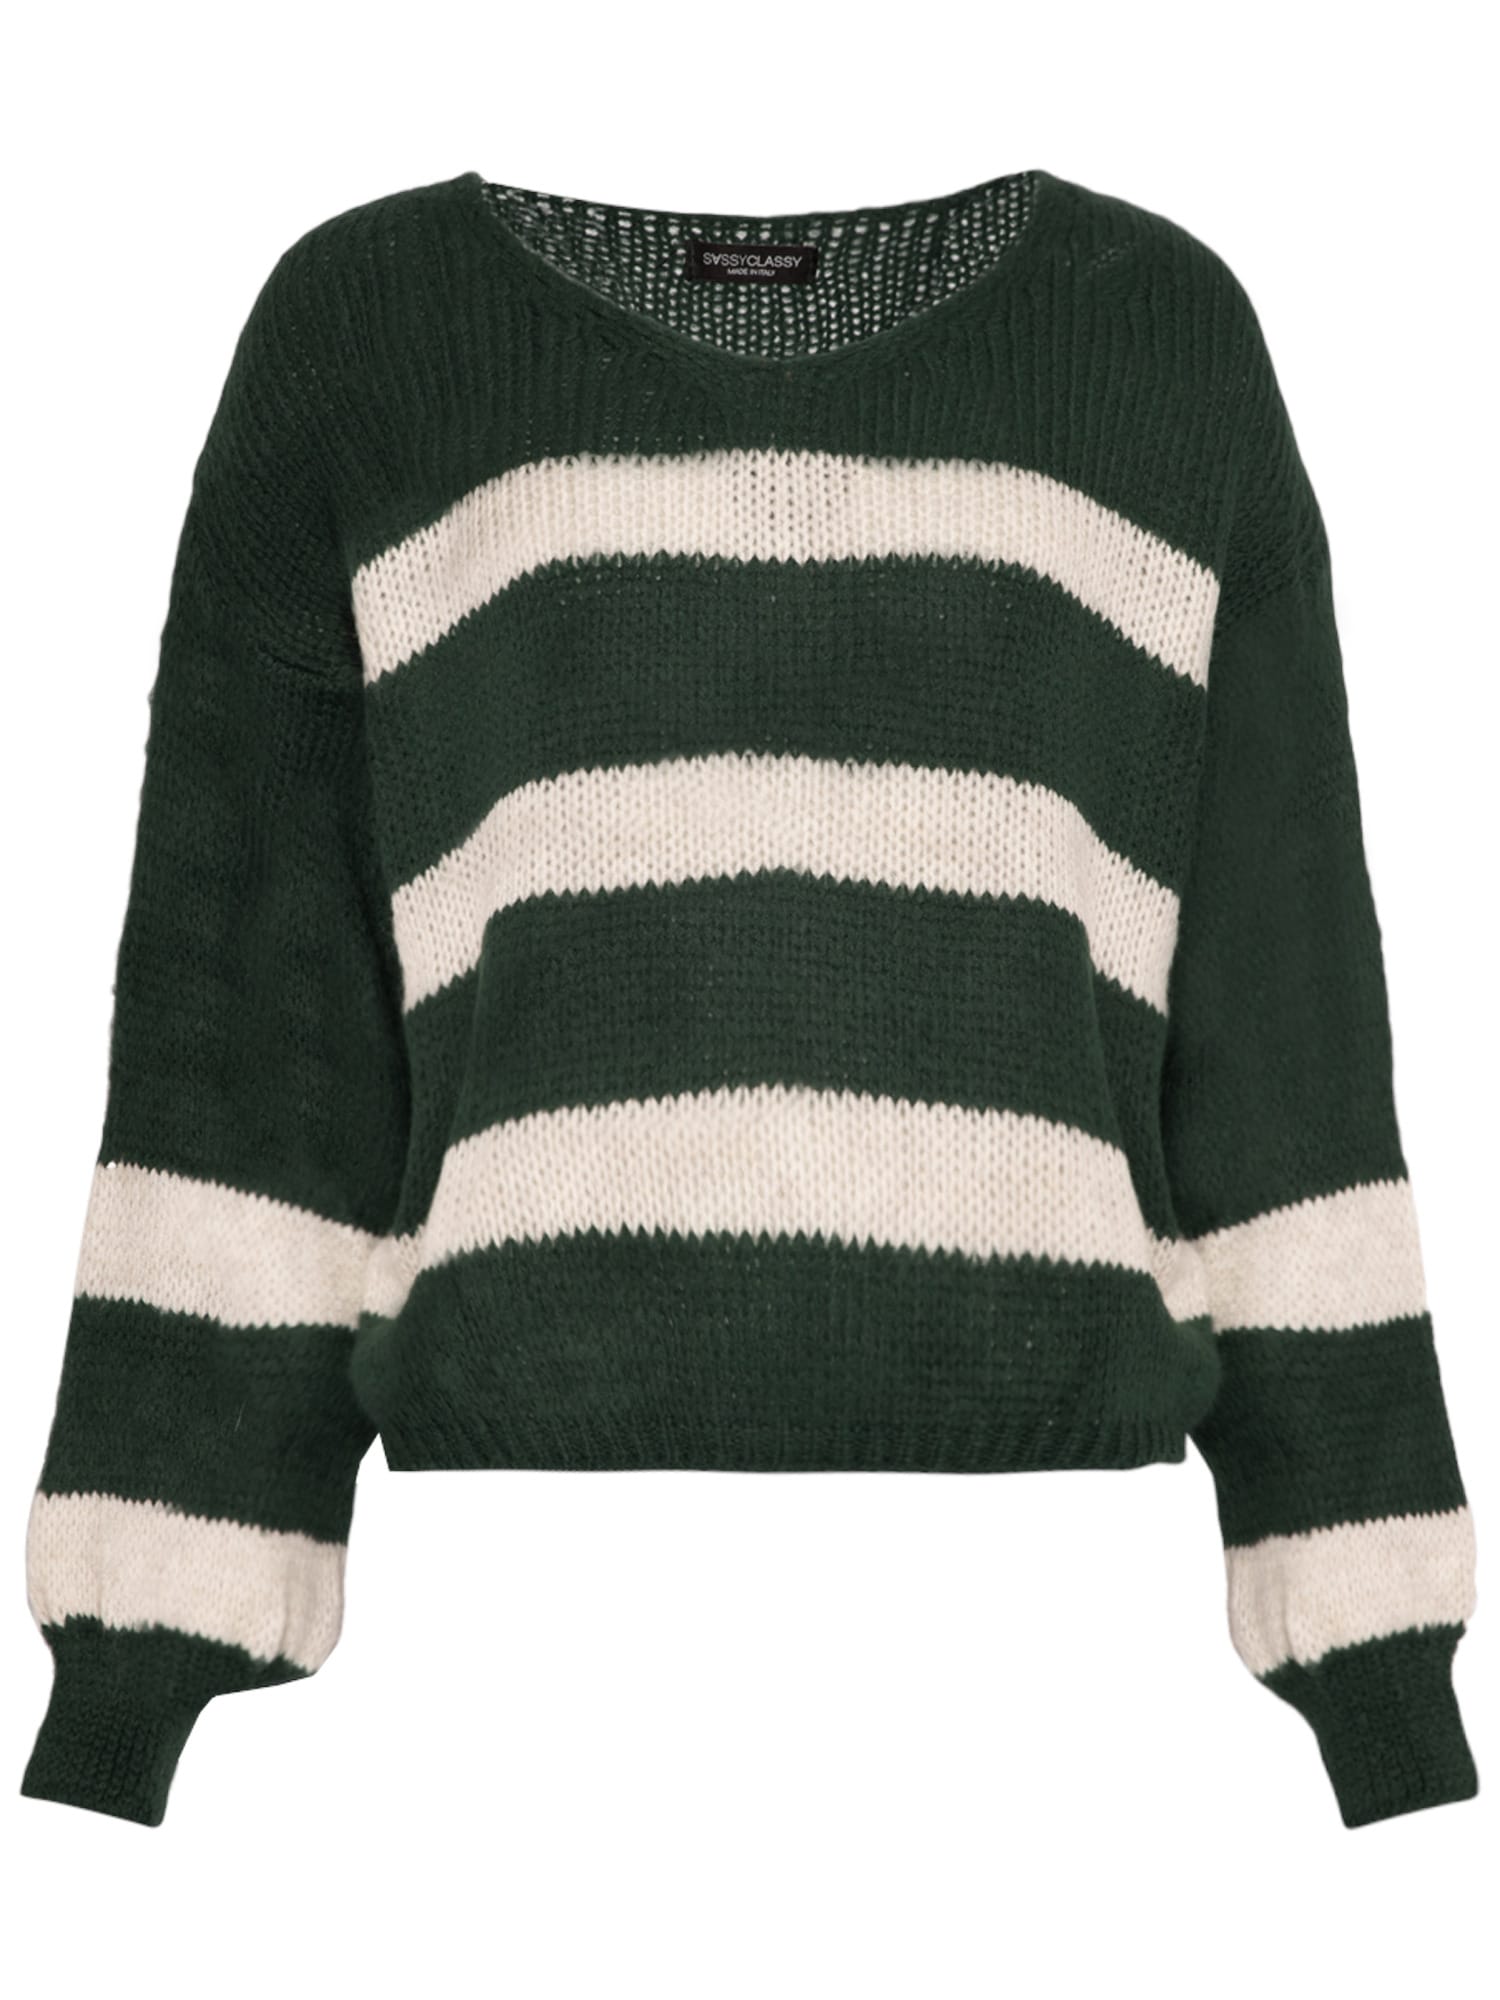 SASSYCLASSY Širok pulover  temno zelena / bela